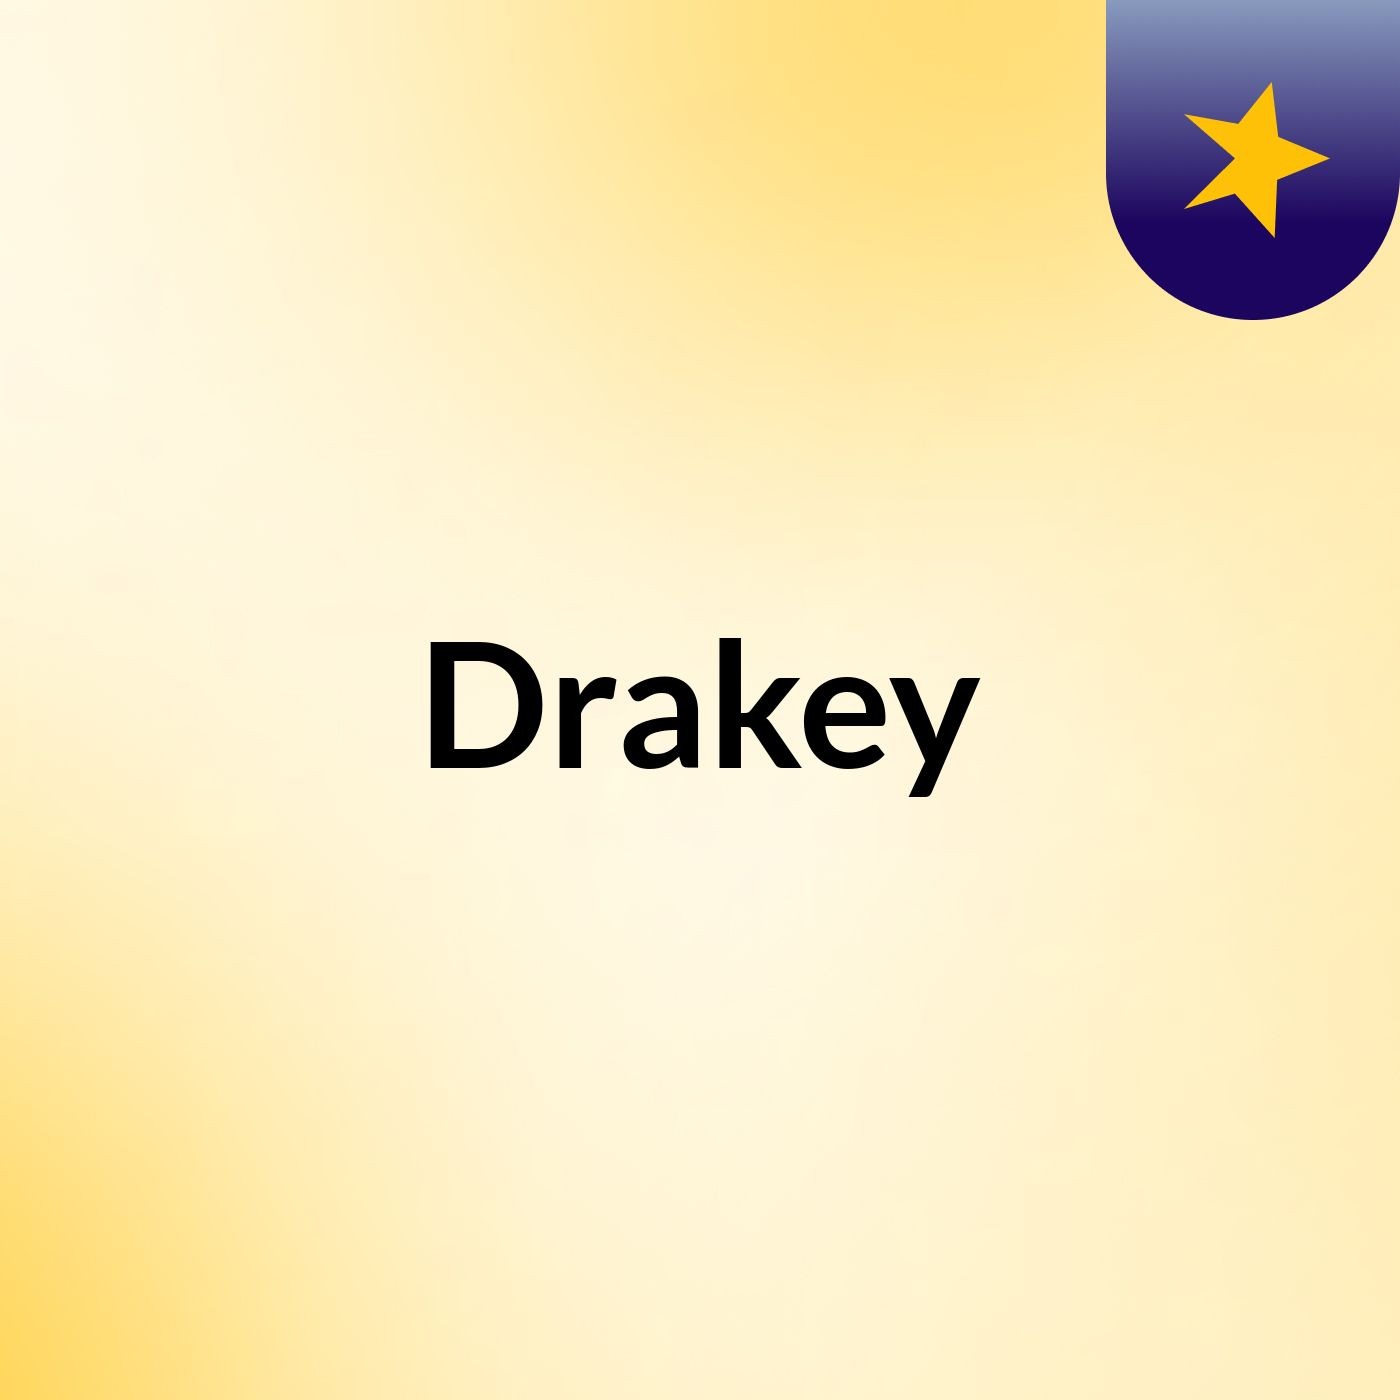 Drakey